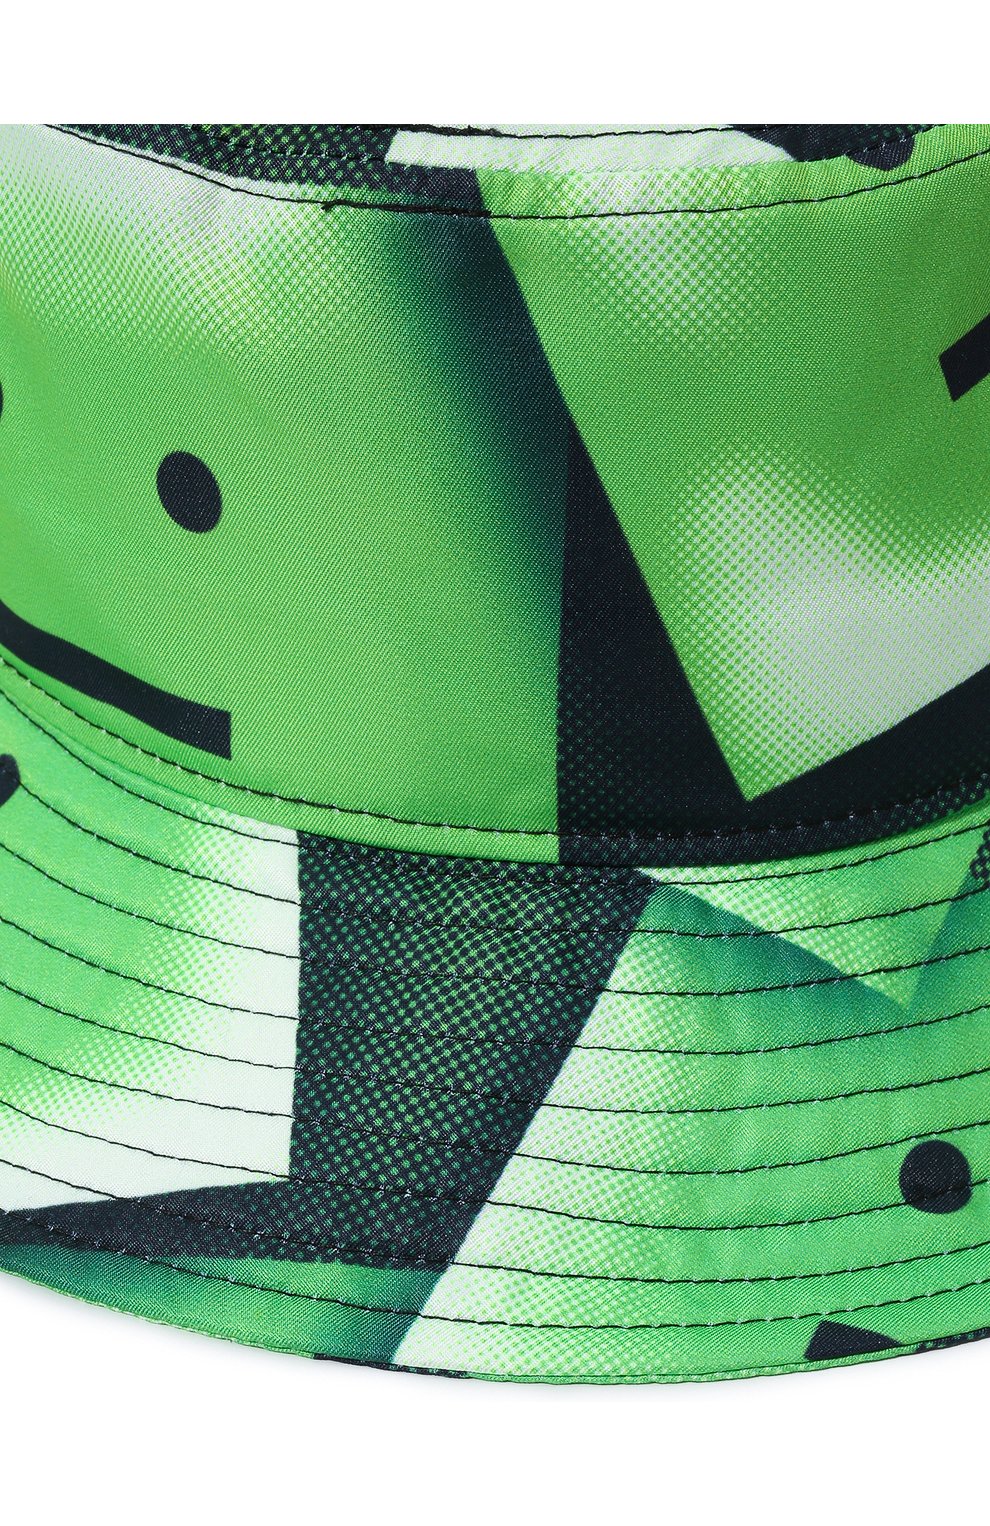 Мужская панама ACNE STUDIOS зеленого цвета, арт. C40205/M | Фото 4 (Материал: Текстиль, Синтетический материал)